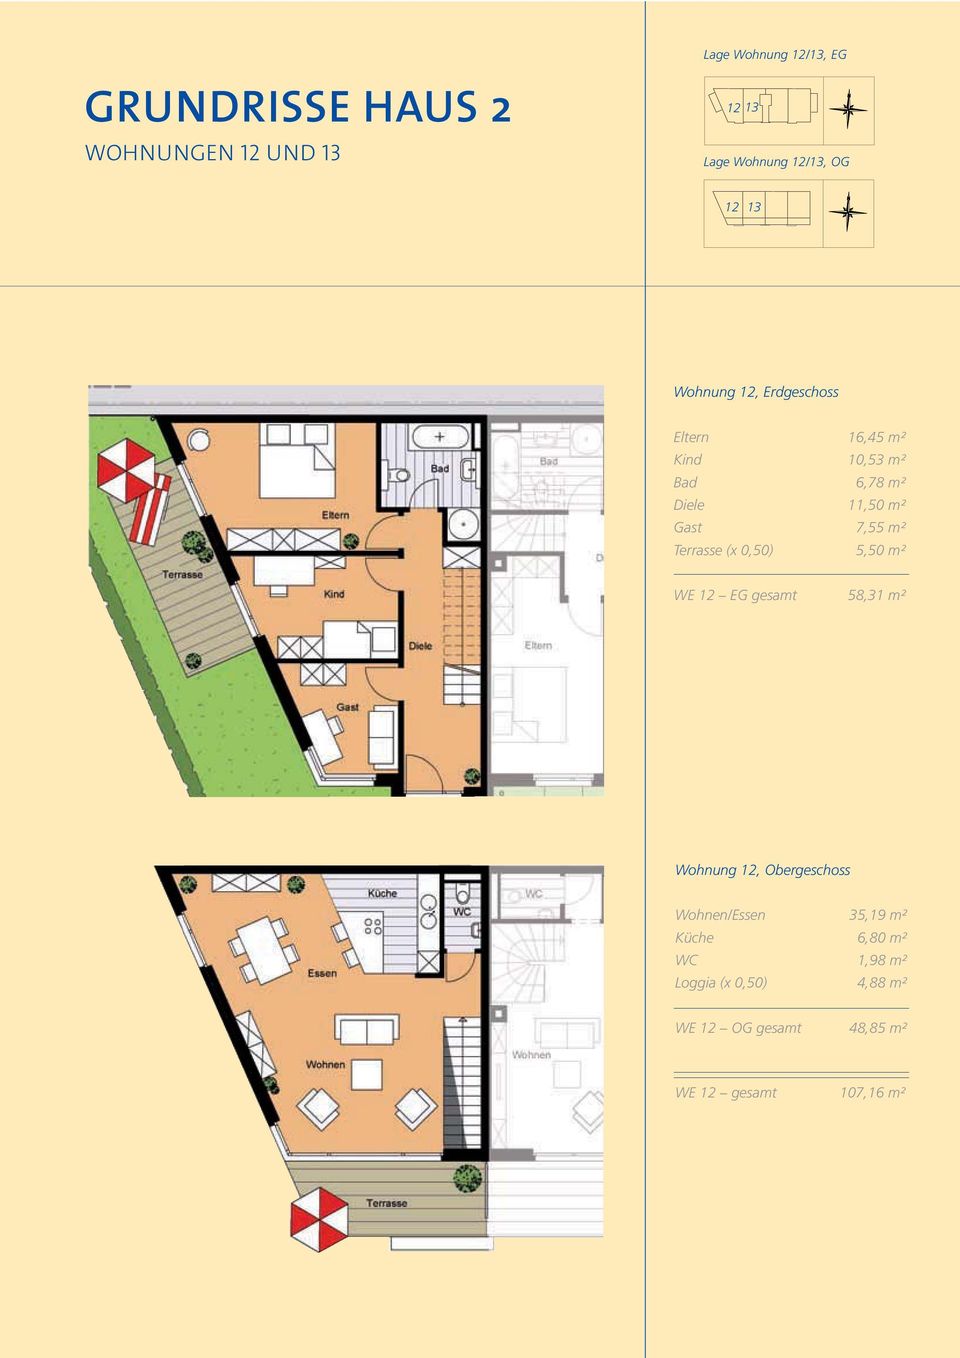 0,50) 5,50 m² WE 12 EG gesamt 58,31 m² Wohnung 12, Obergeschoss Wohnen/Essen 35,19 m²